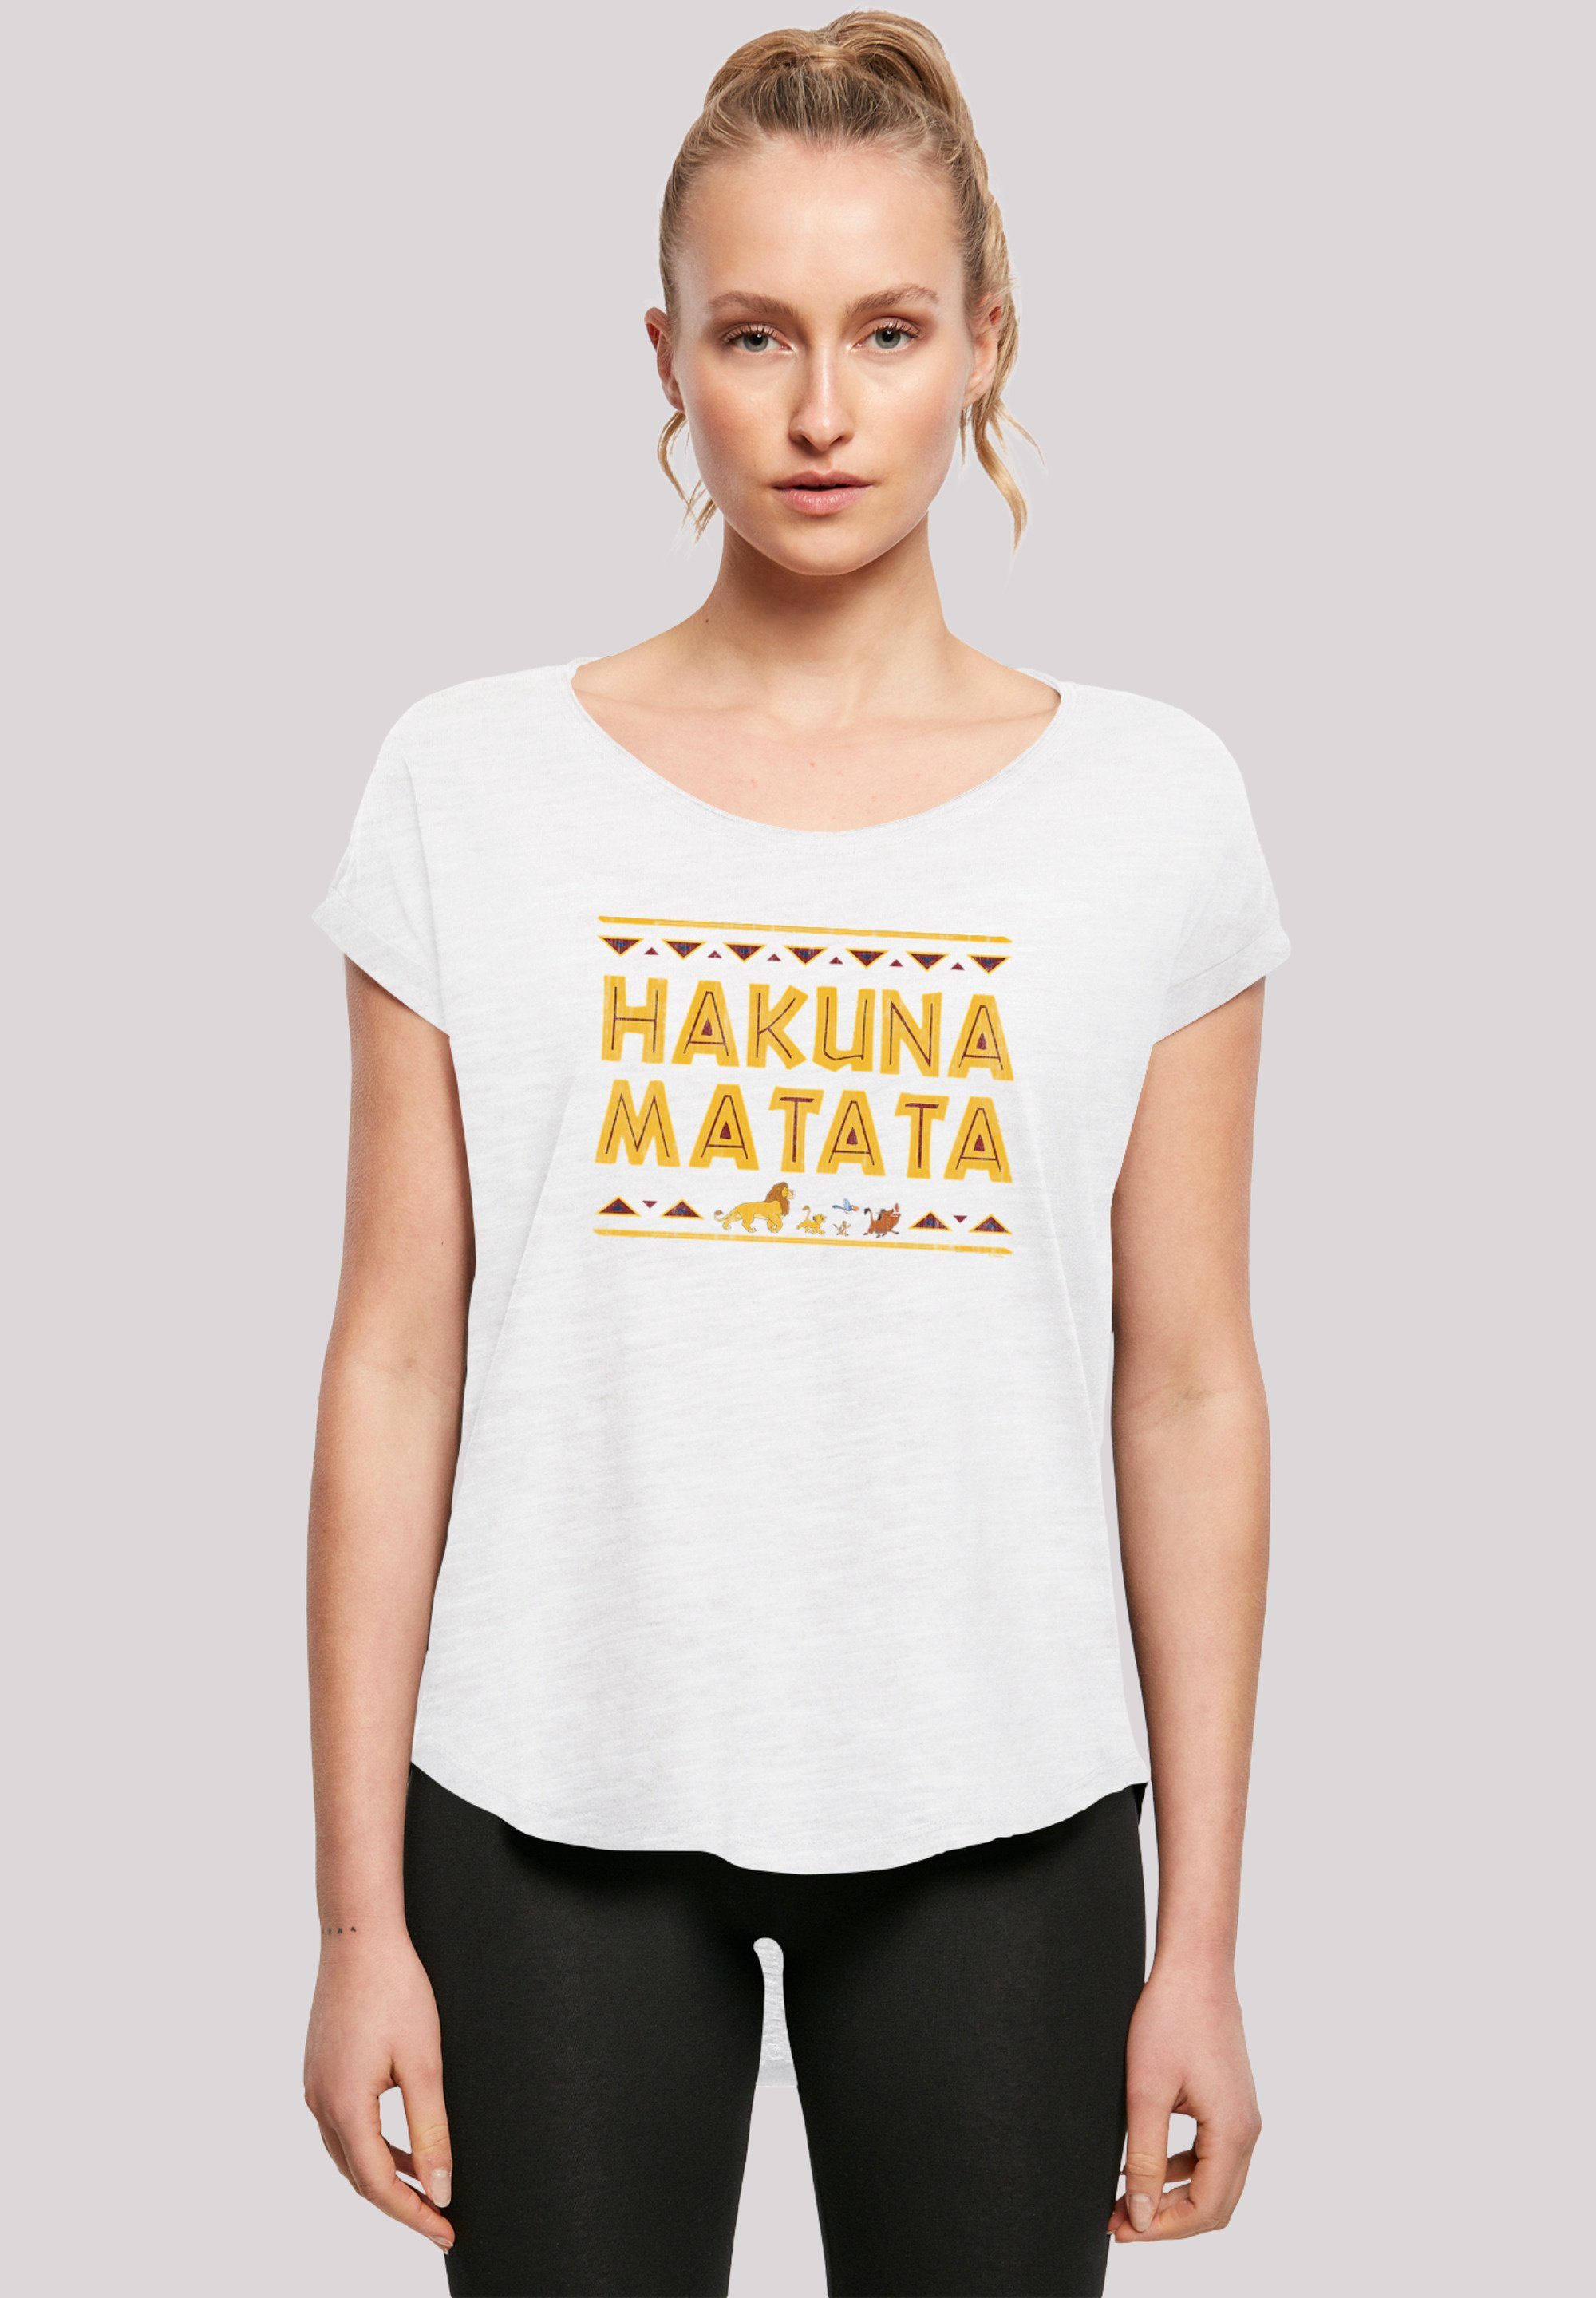 Hinten Print, T-Shirt Matata F4NT4STIC Löwen Damen König geschnittenes T-Shirt lang Hakuna extra der